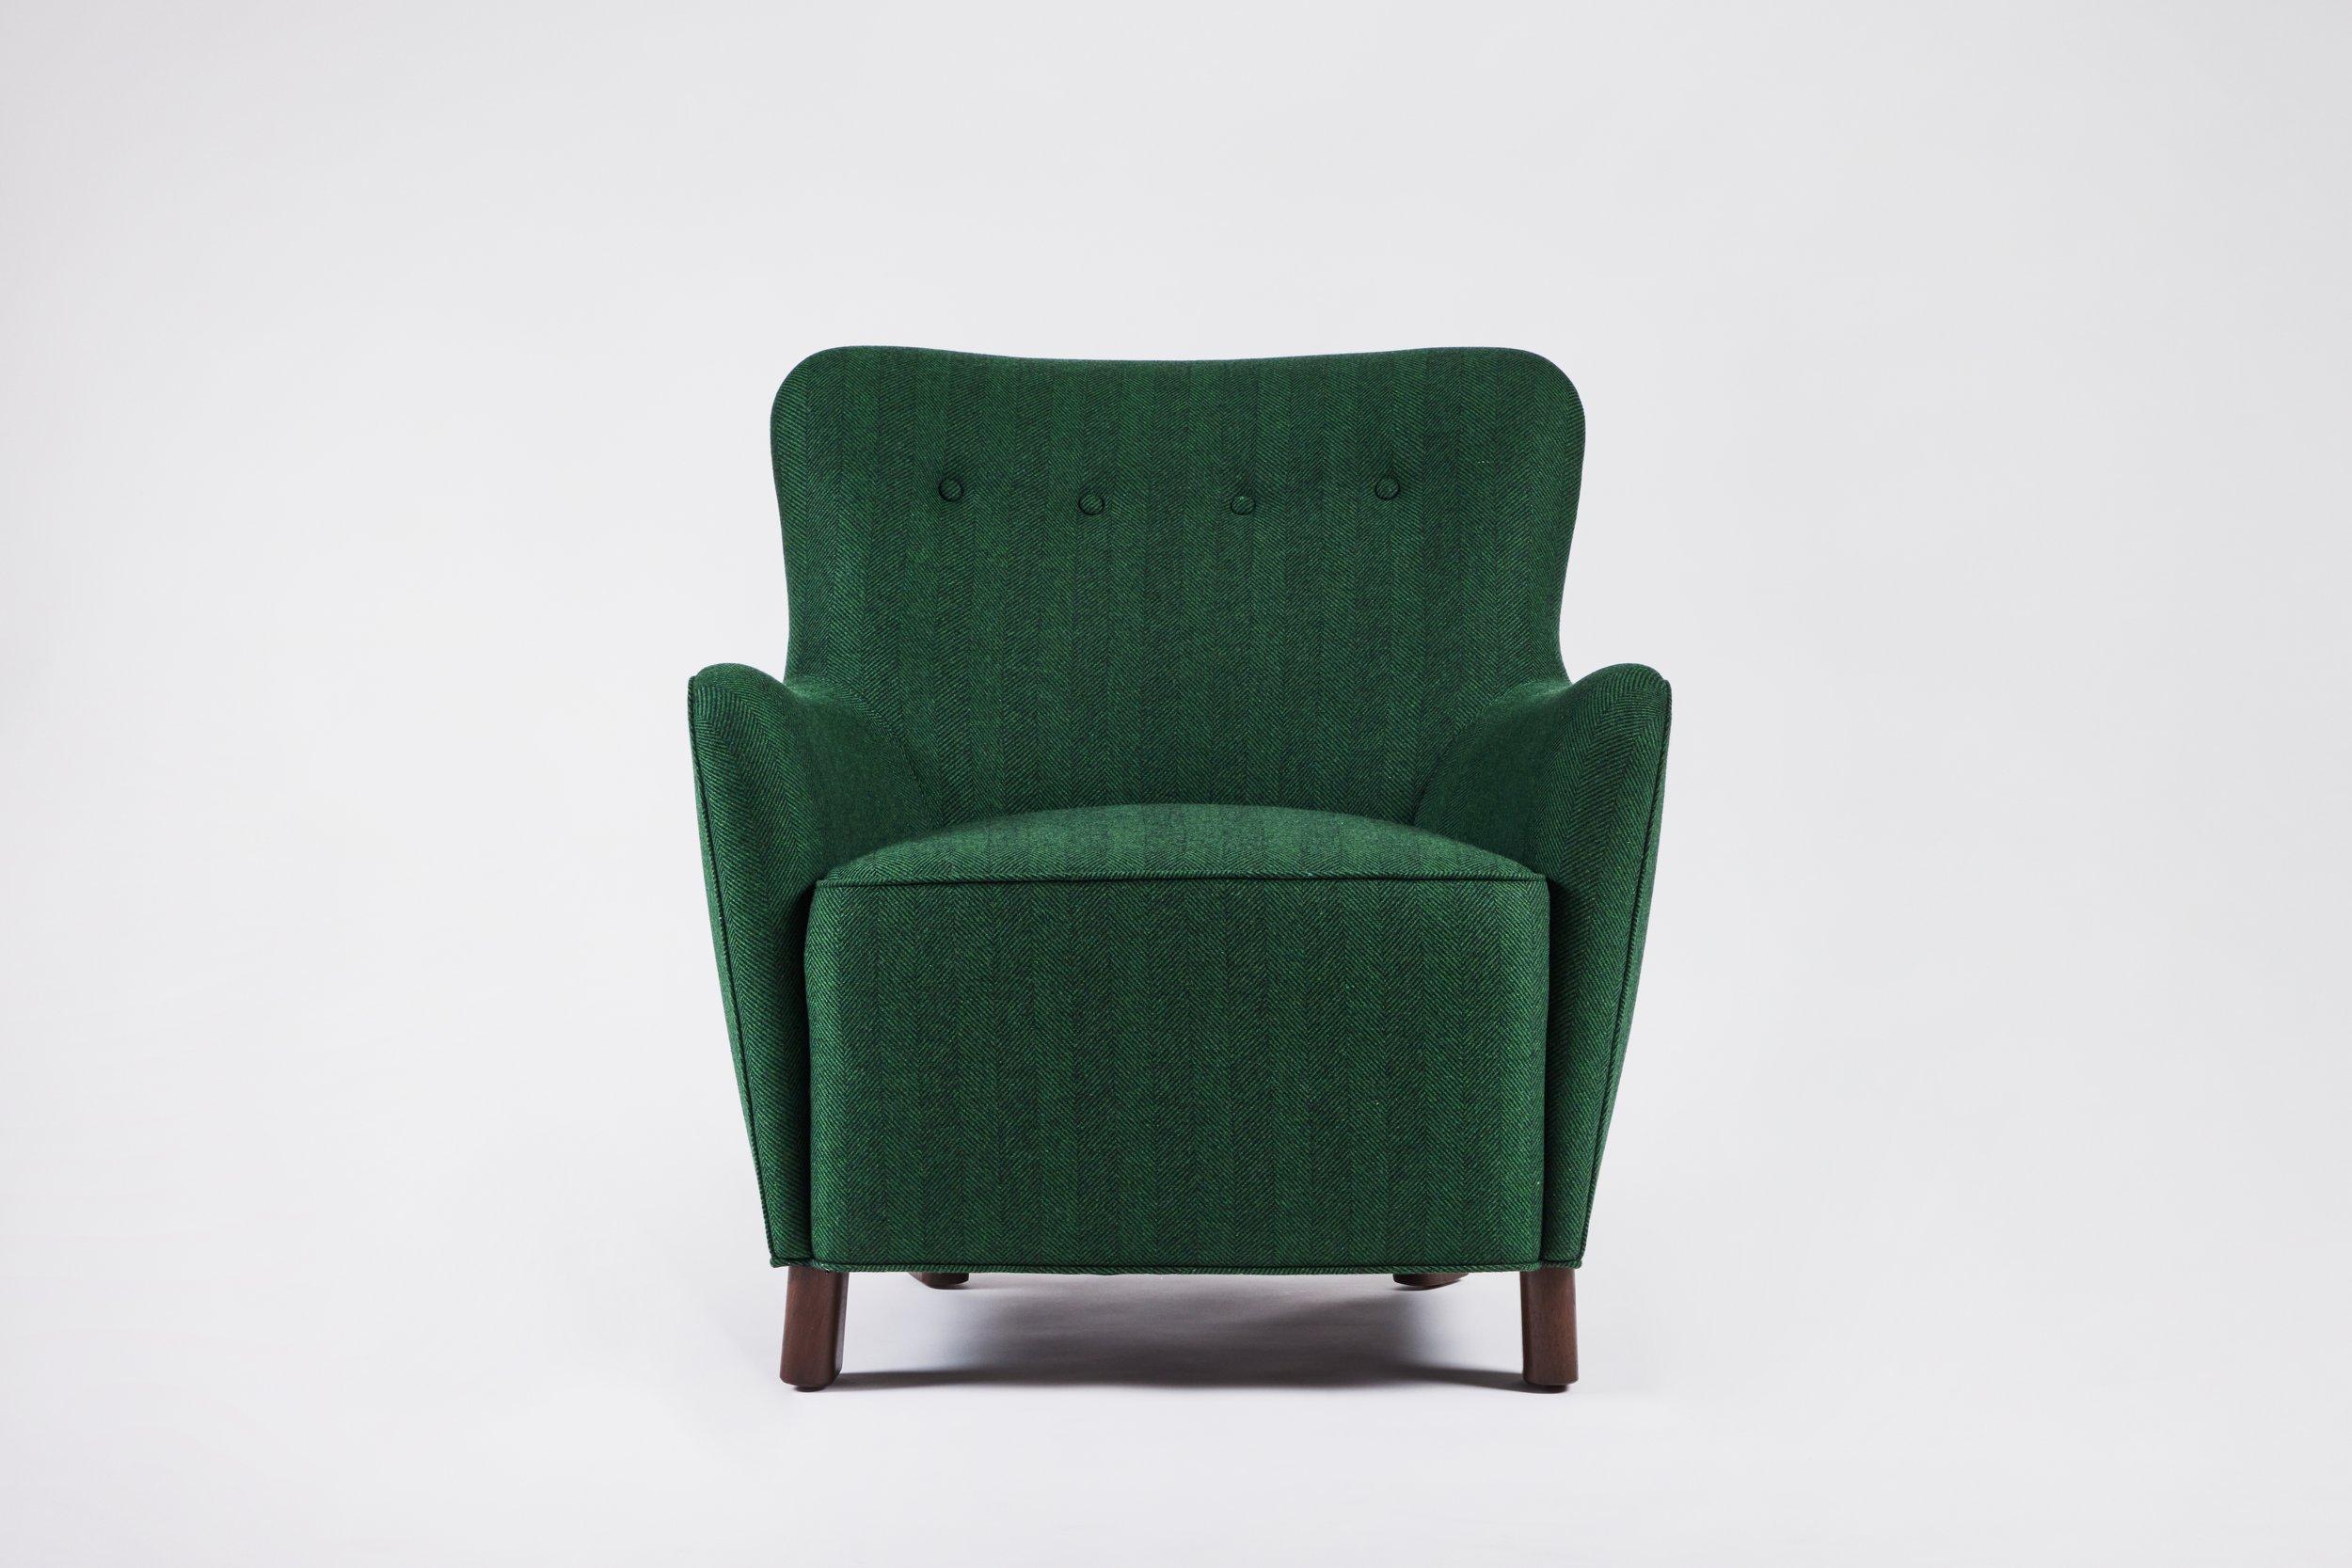 Der Ann-Stuhl von Martin & Brockett zeichnet sich durch einen straffen, achtfach gefederten, handgebundenen Sitz und ein stromlinienförmiges Design aus, das ein gestütztes Sitzgefühl vermittelt.

H 32 in. x B 32 in. x T 36 in. Sitzhöhe 17,5